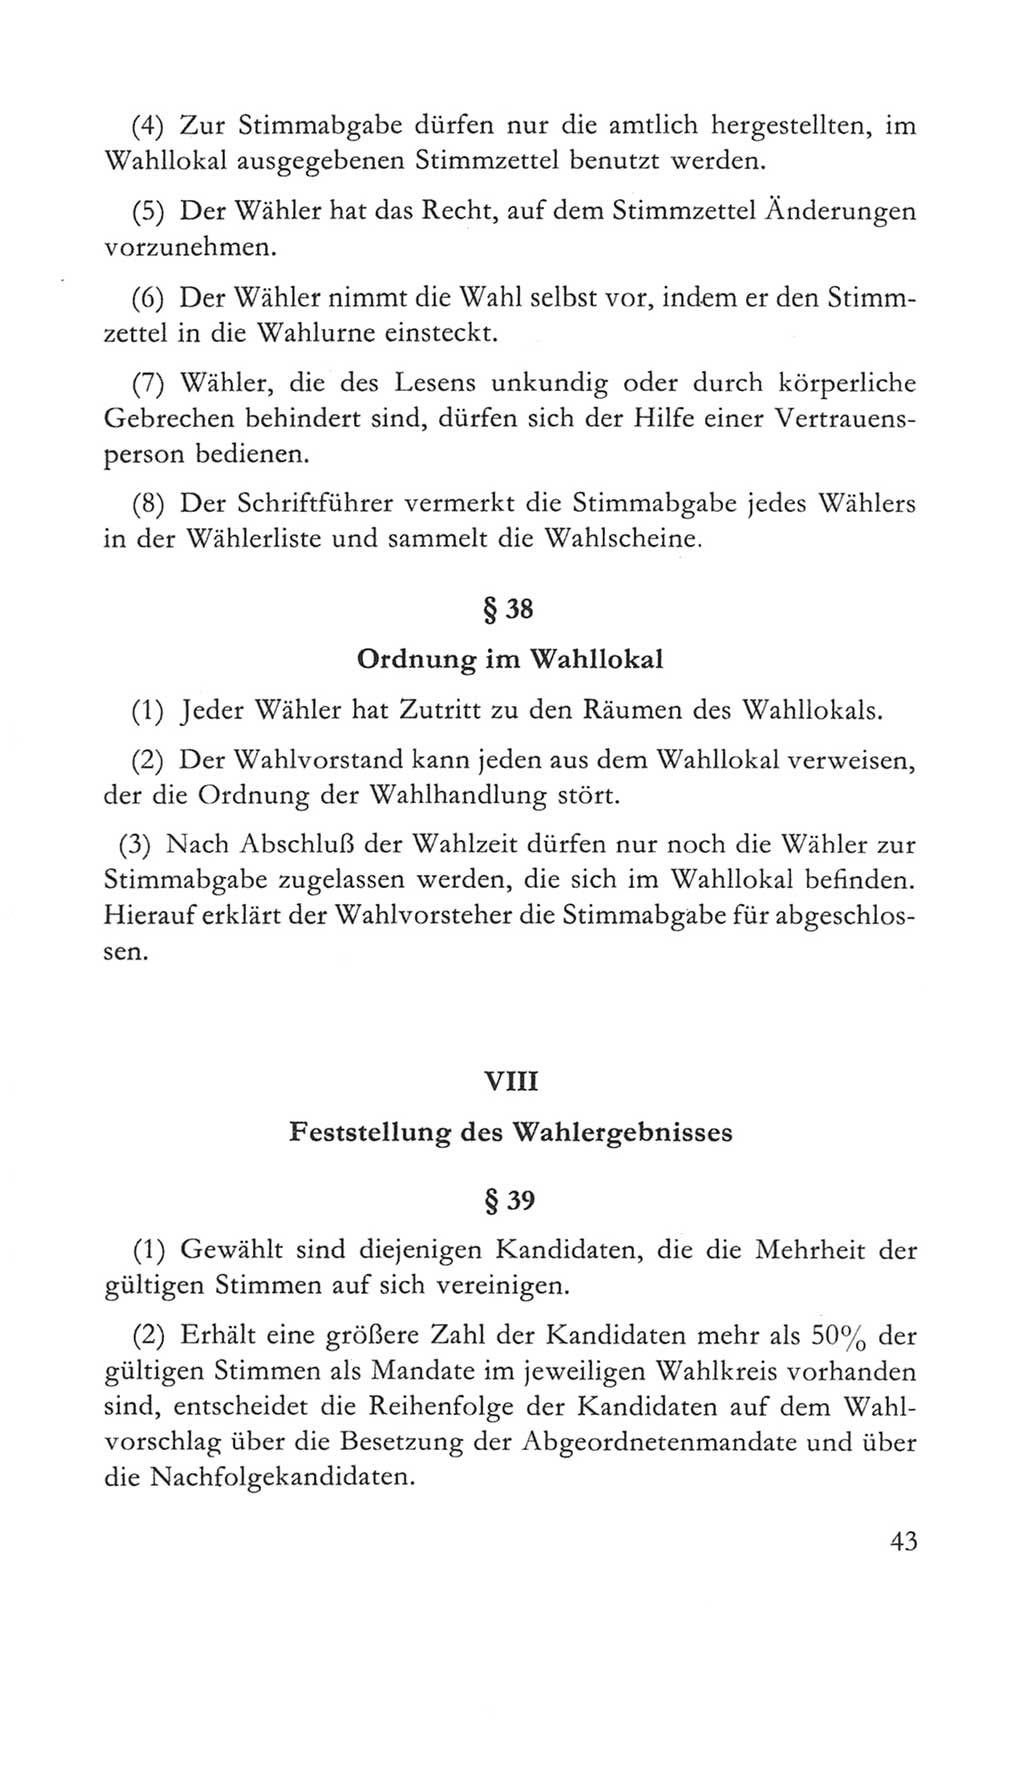 Volkskammer (VK) der Deutschen Demokratischen Republik (DDR) 5. Wahlperiode 1967-1971, Seite 43 (VK. DDR 5. WP. 1967-1971, S. 43)